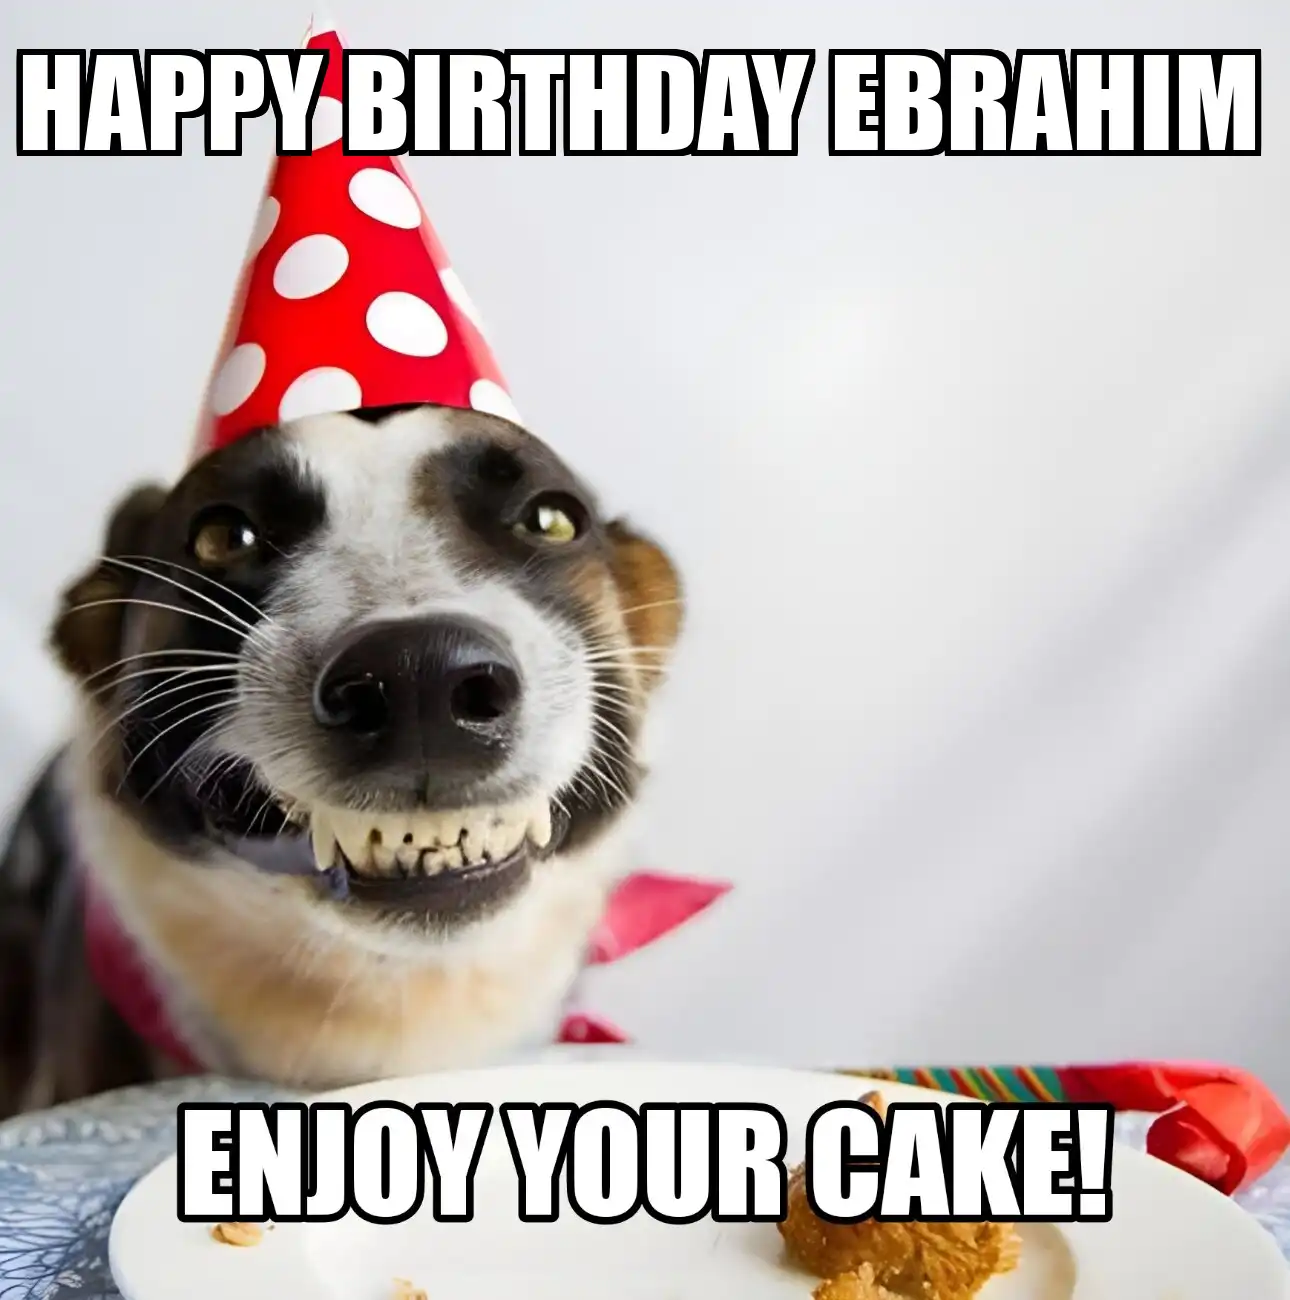 Happy Birthday Ebrahim Enjoy Your Cake Dog Meme